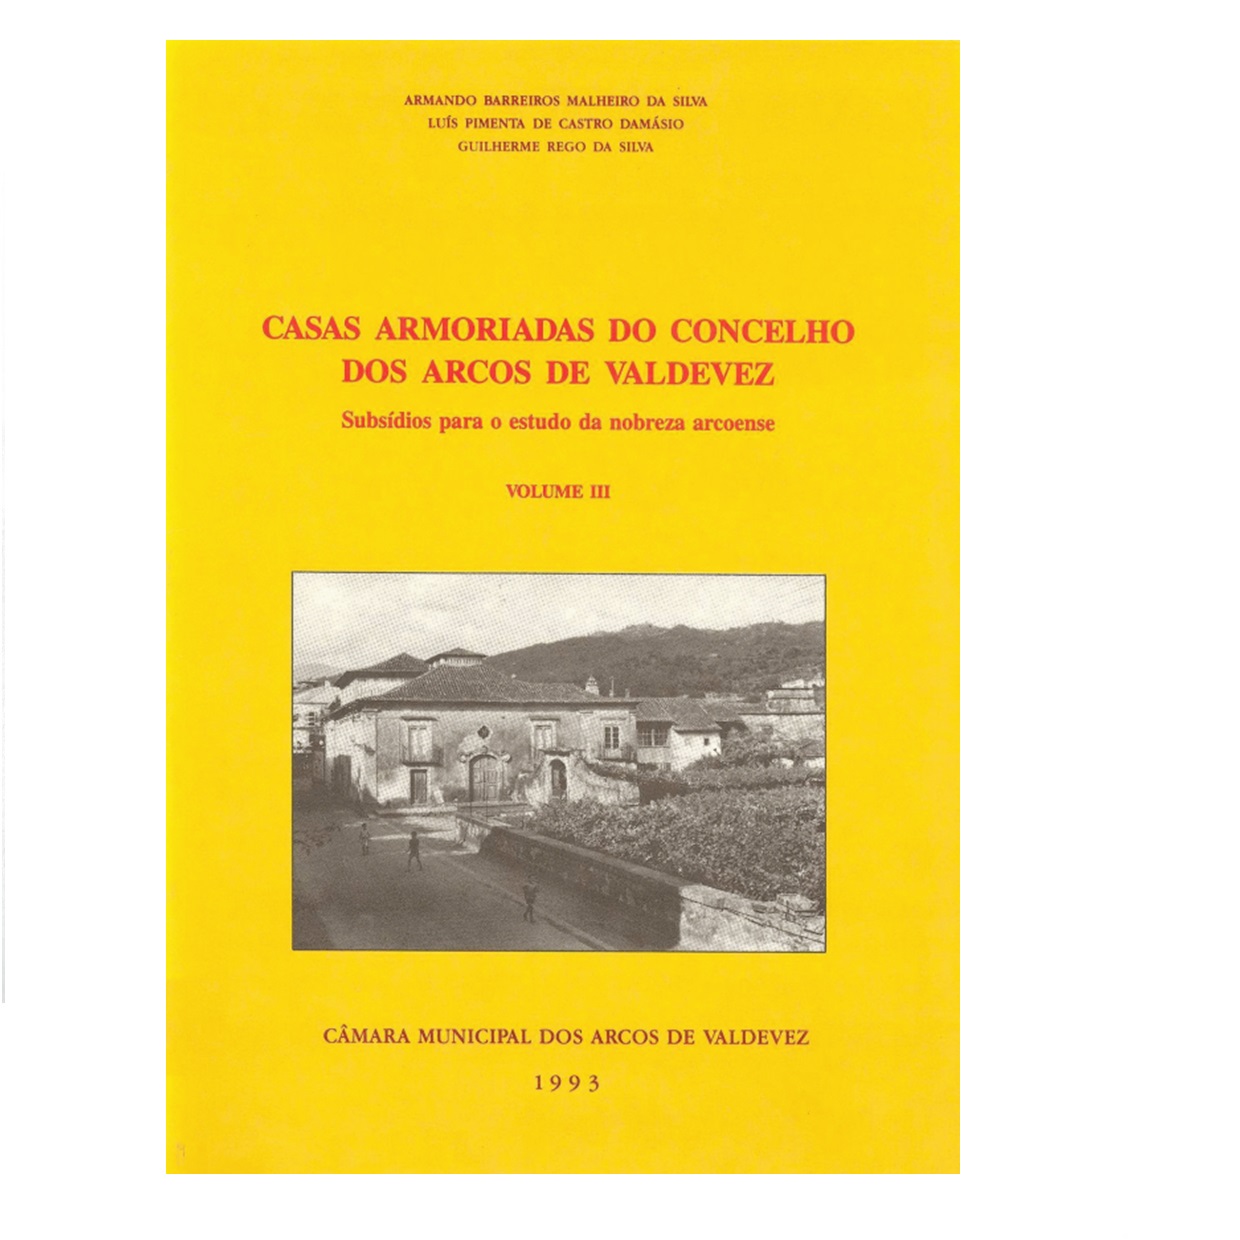  Casas armoriadas do Concelho dos Arcos de Valdevez: subsídios para o estudo da nobreza arcoense. Volume III